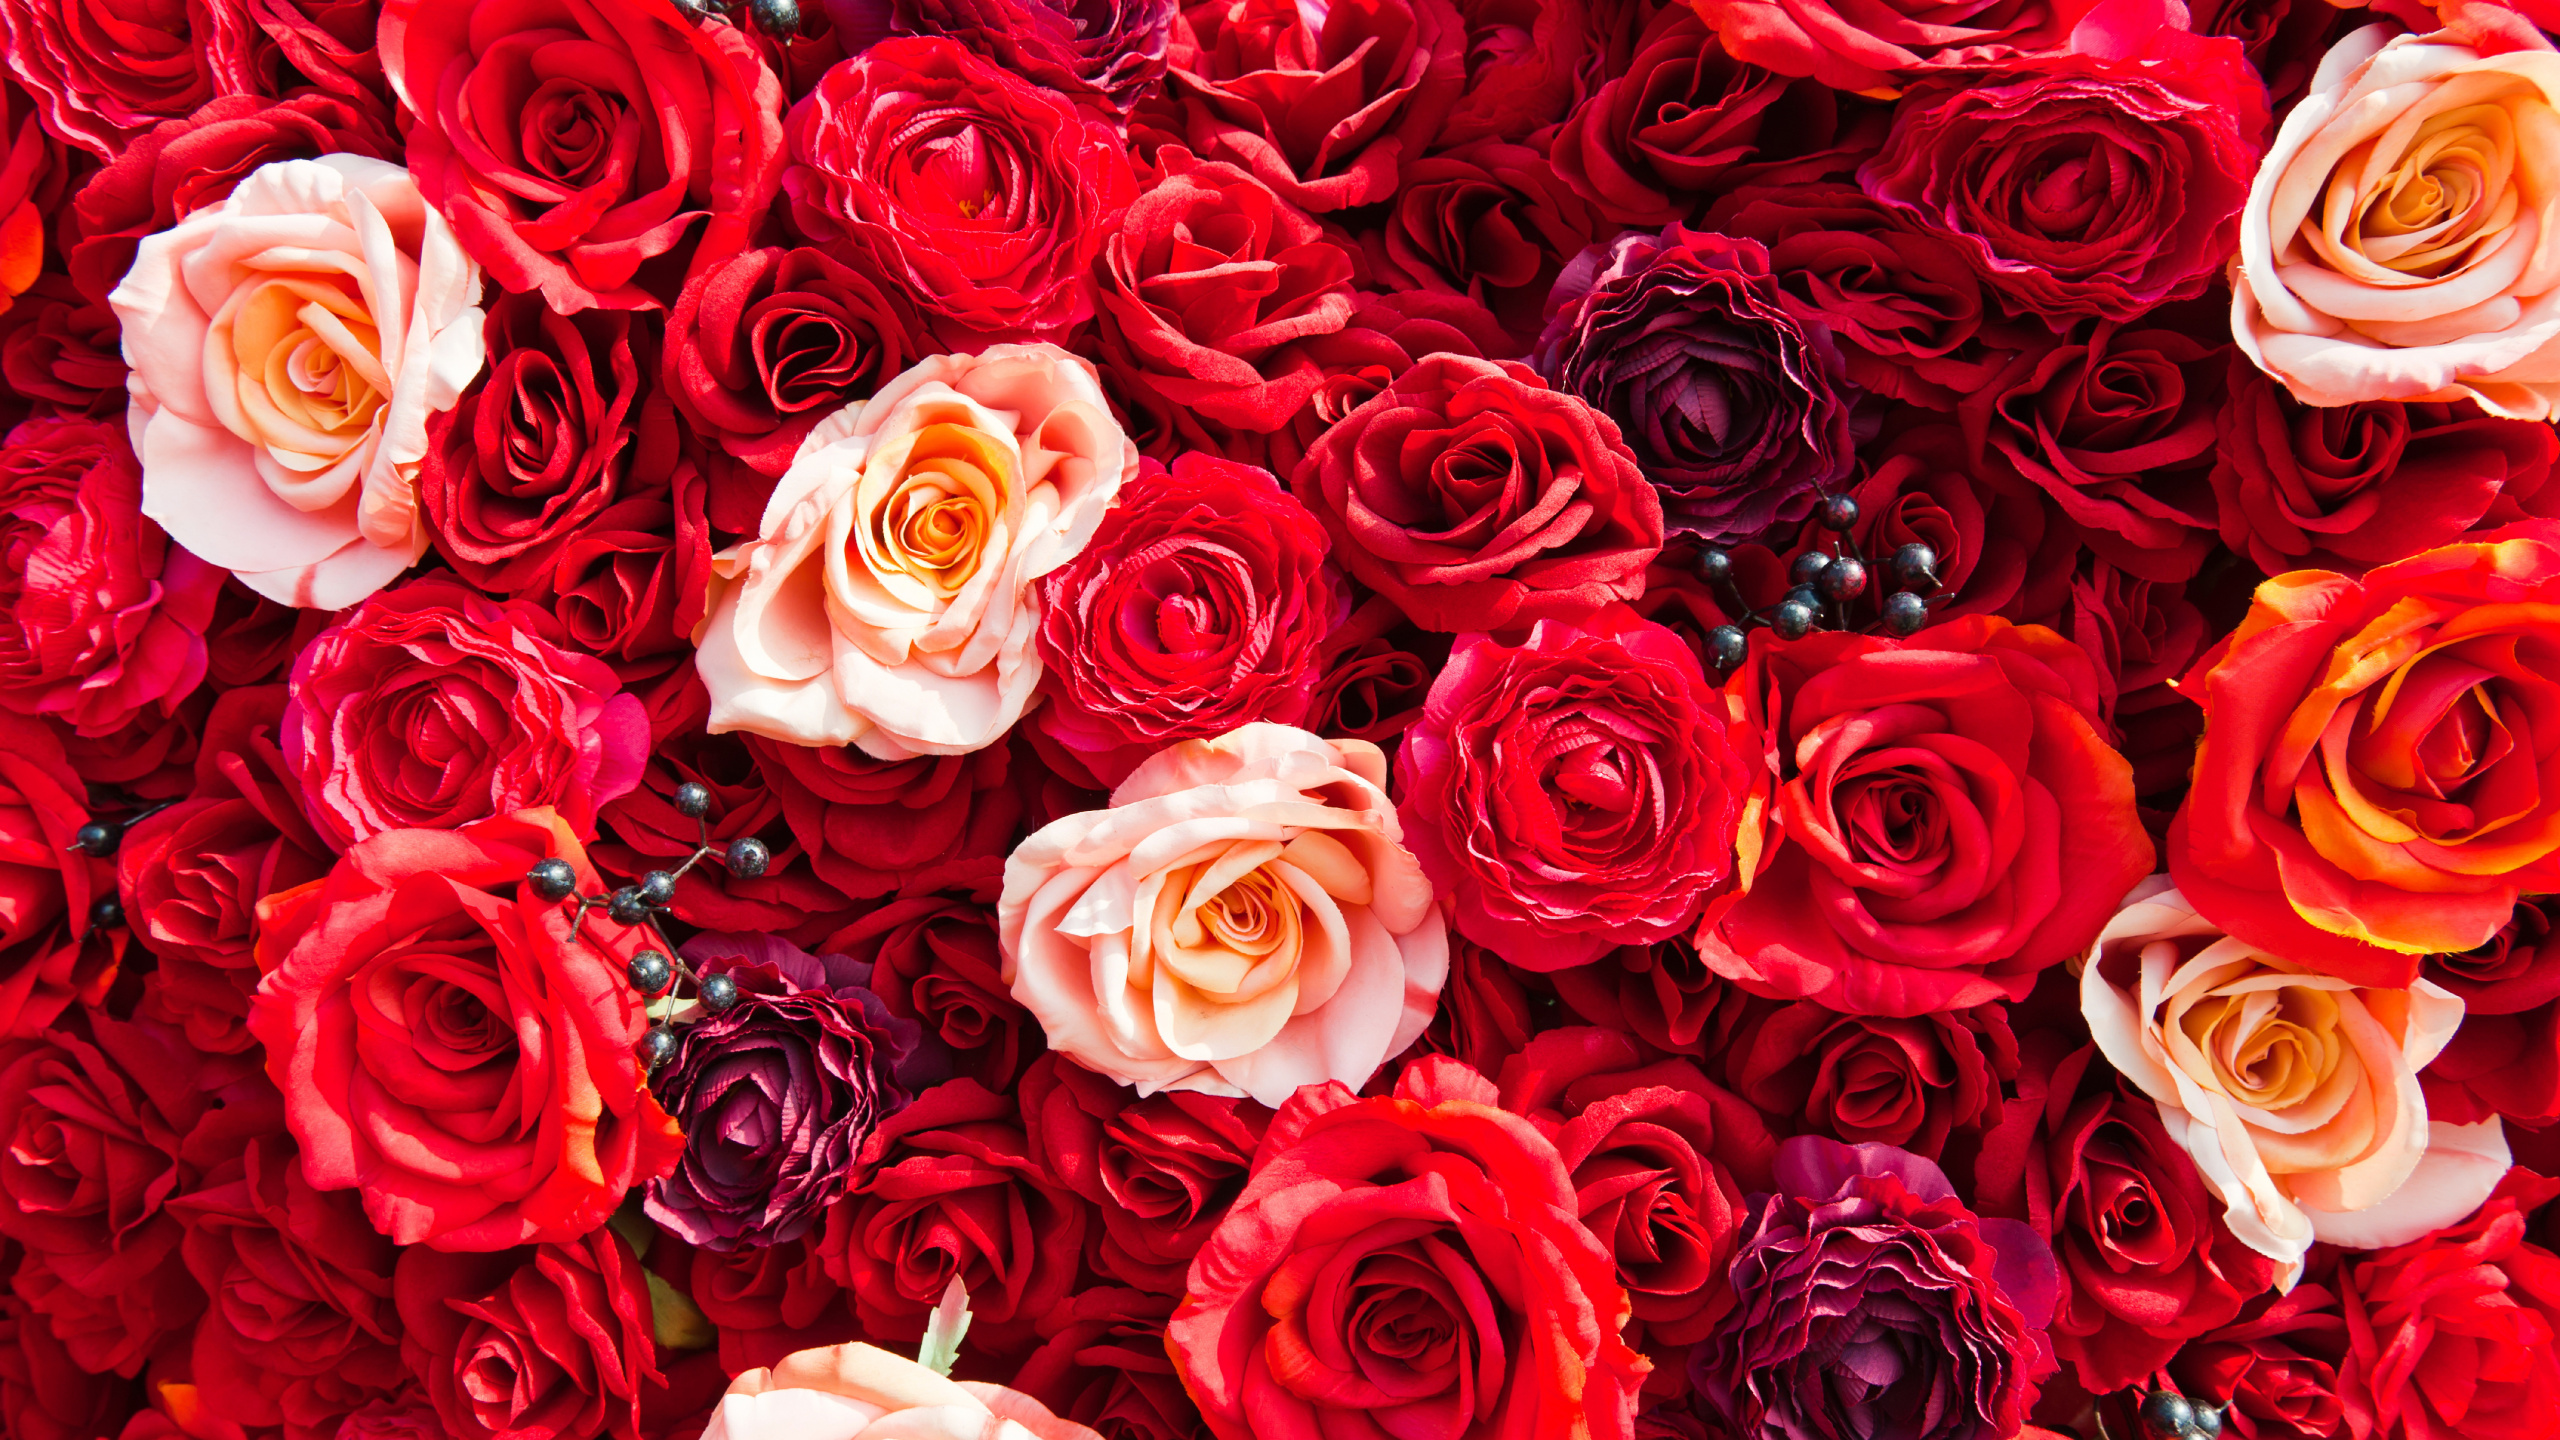 Обои сад роз, Роза, цветок, красный цвет, семья Роуз в разрешении 2560x1440